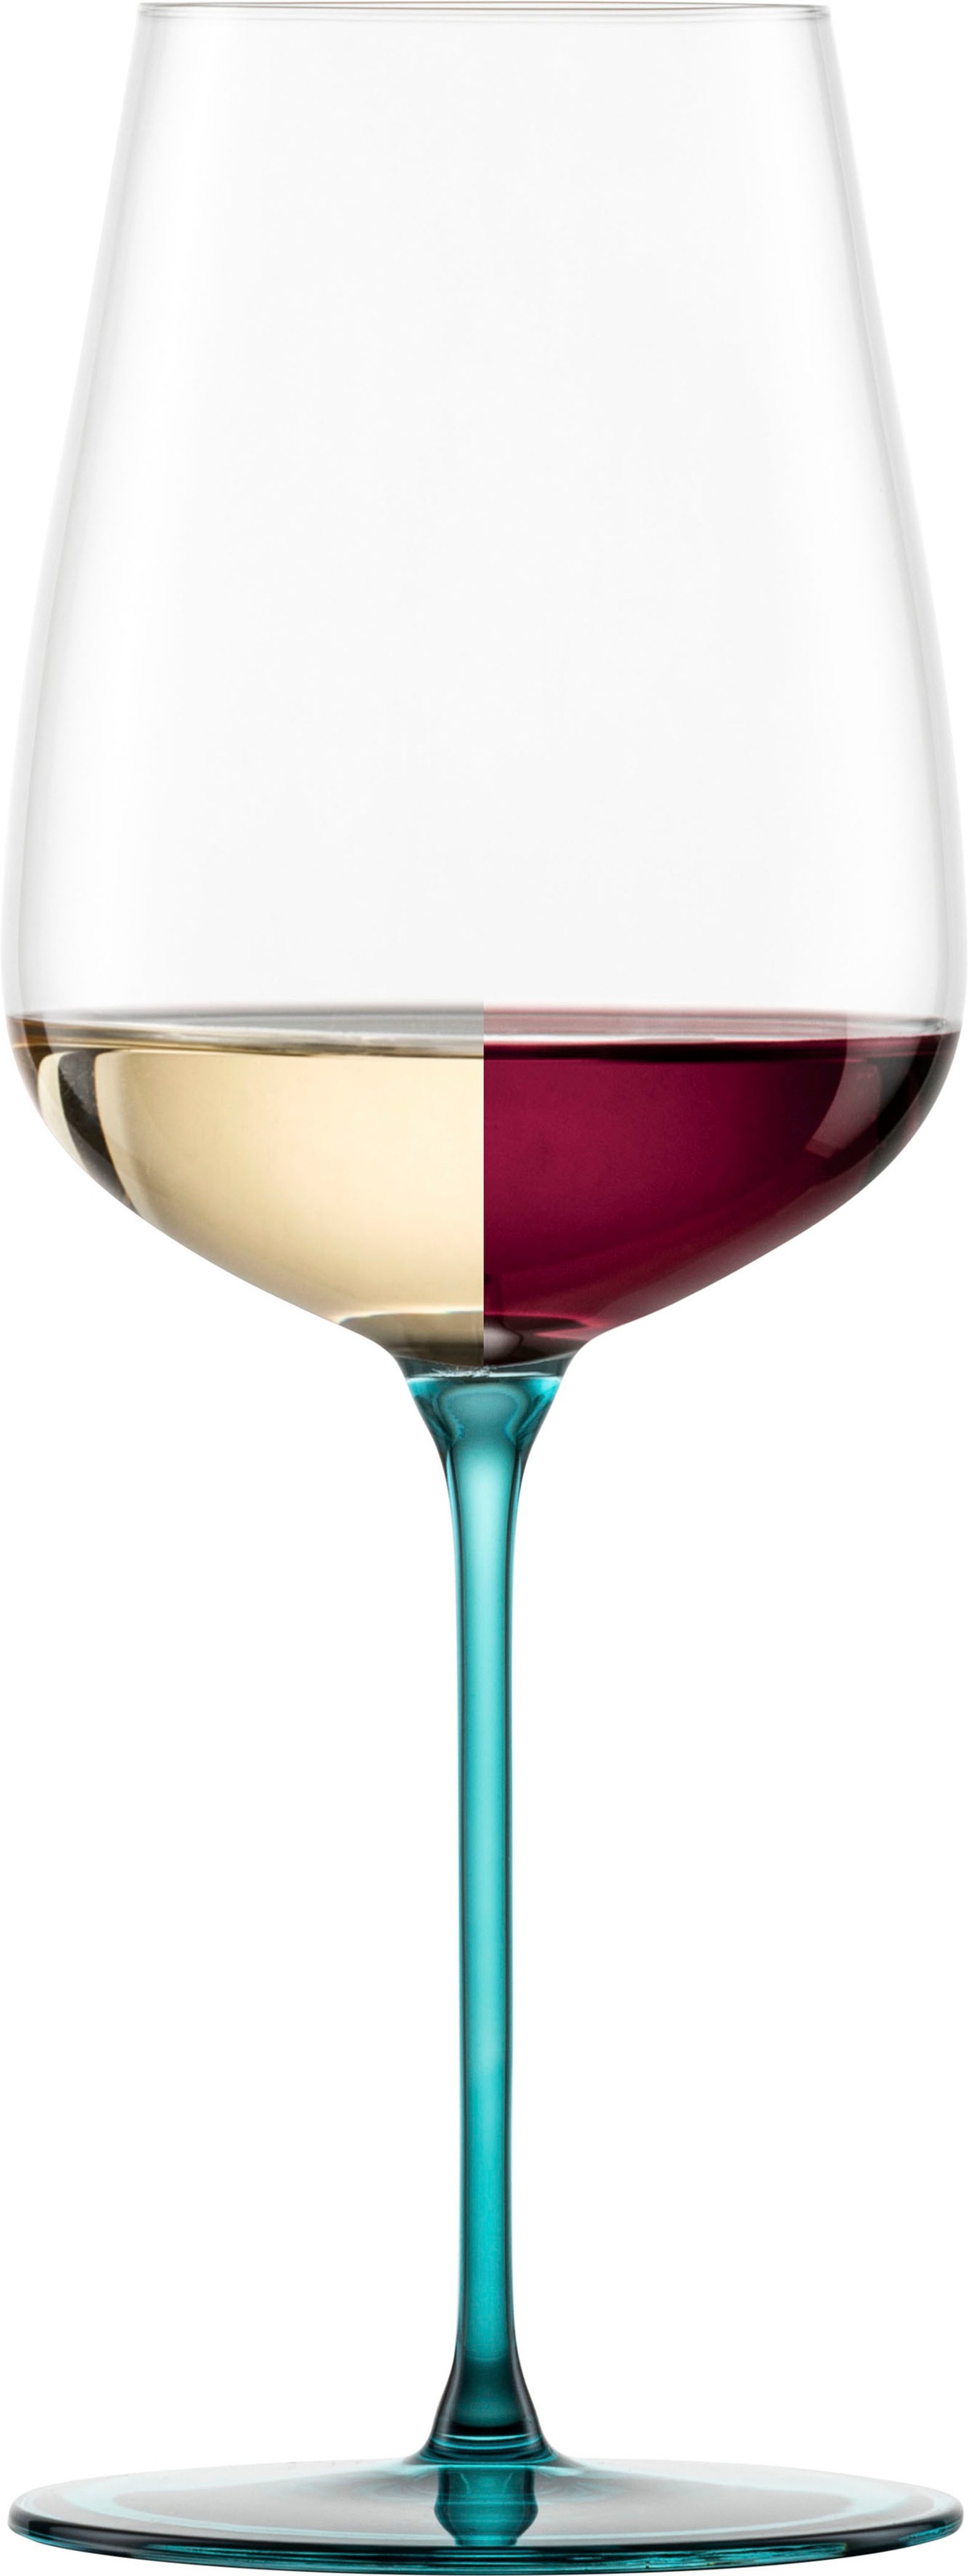 Eisch Weinglas »INSPIRE SENSISPLUS, Made in Germany«, (Set, 2 tlg., 2 Gläser im Geschenkkarton), die Veredelung der Stiele erfolgt in Handarbeit, 2-teilig